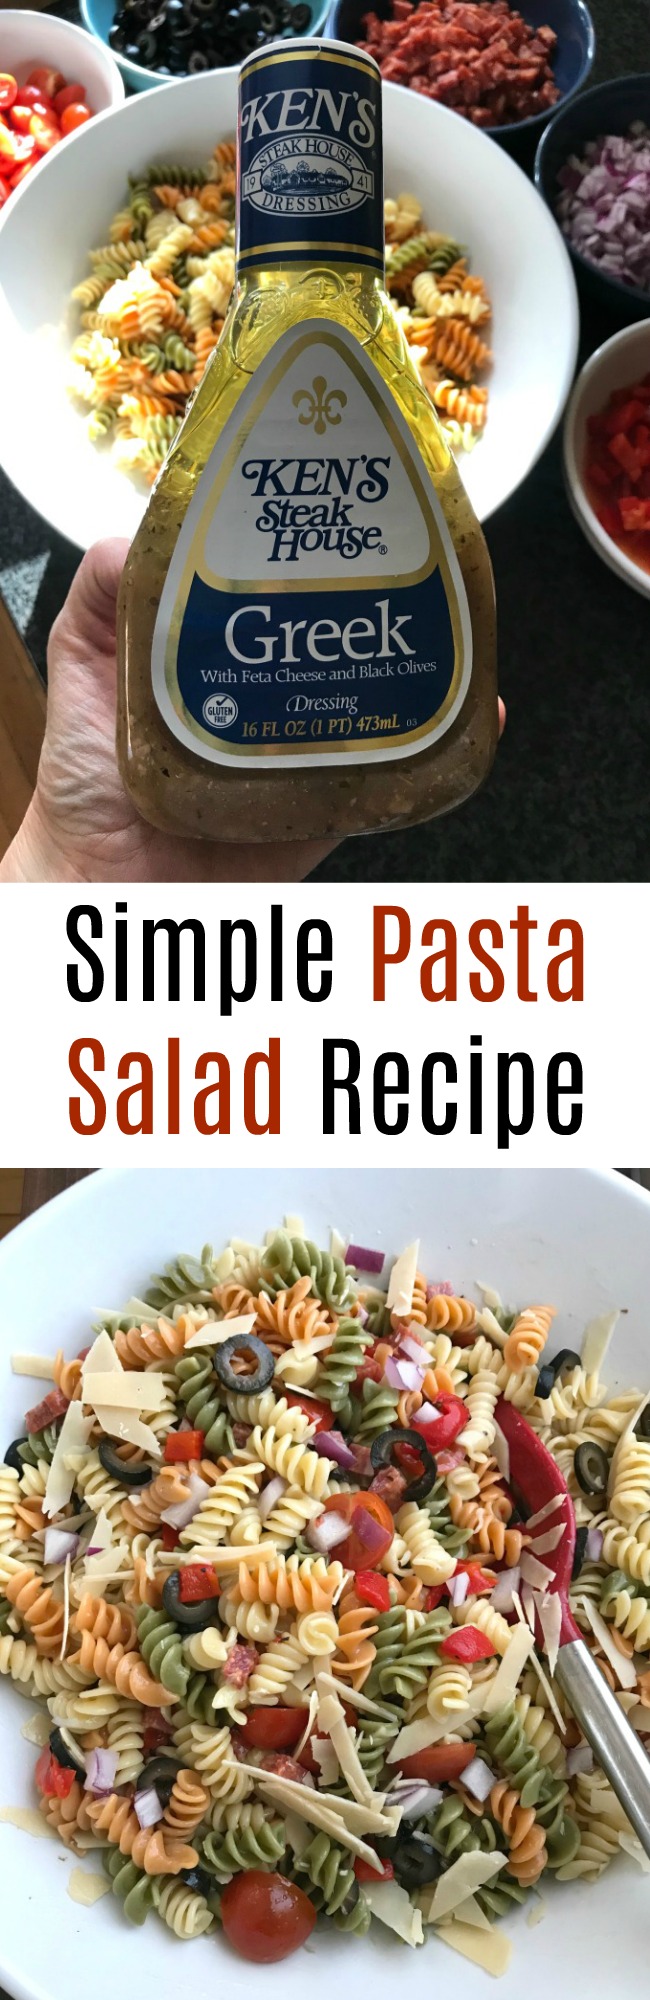 Simple Recipe for Pasta Salad